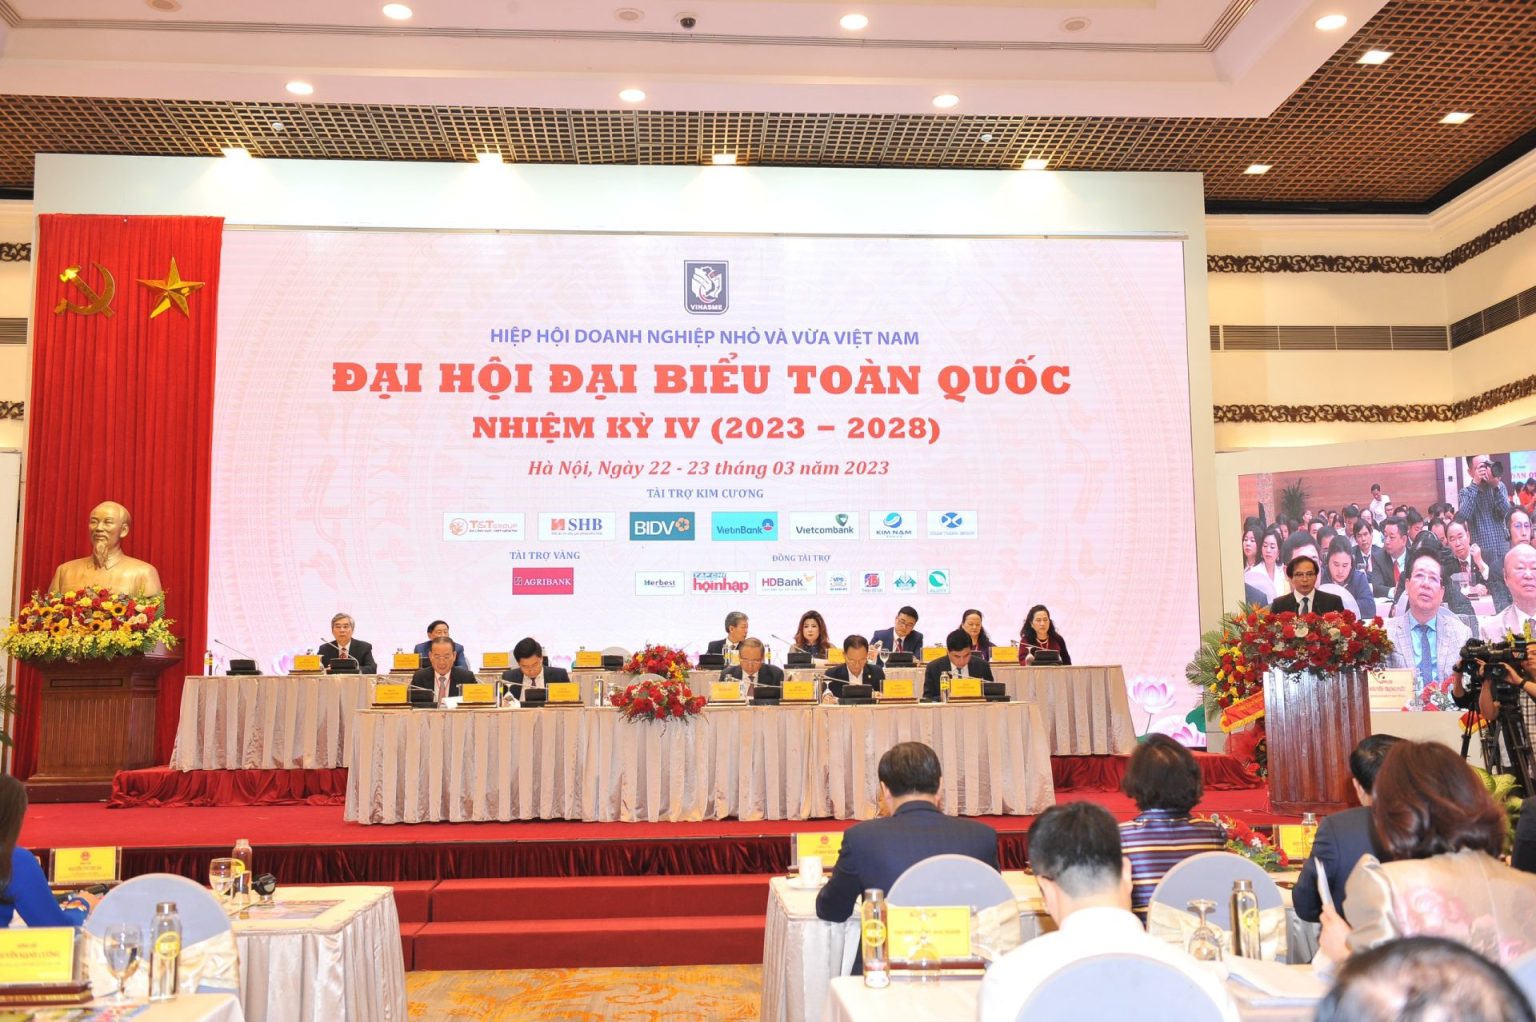 Hiệp hội Doanh nghiệp nhỏ và vừa Việt Nam tổ chức thành công Đại hội Đại biểu toàn quốc nhiệm kỳ IV (2023 – 2028)